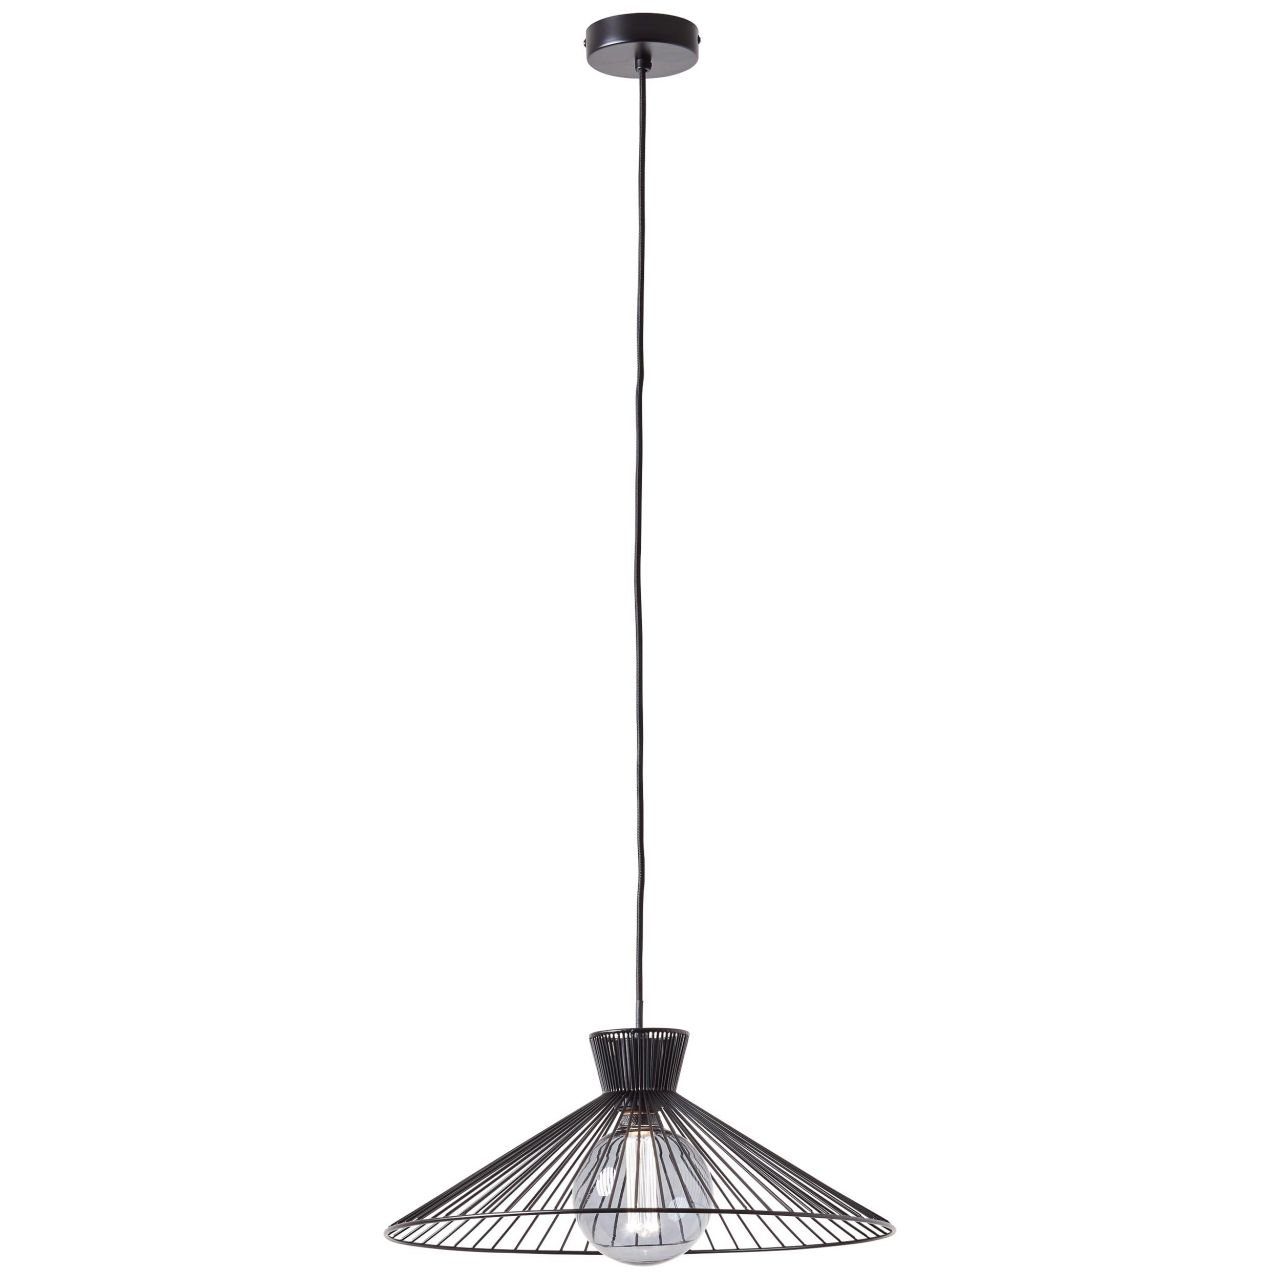 Brilliant Pendelleuchte Elmont, Lampe, 52W, A60, E27, 45cm 1x Kabel Pendelleuchte matt, schwarz Elmont